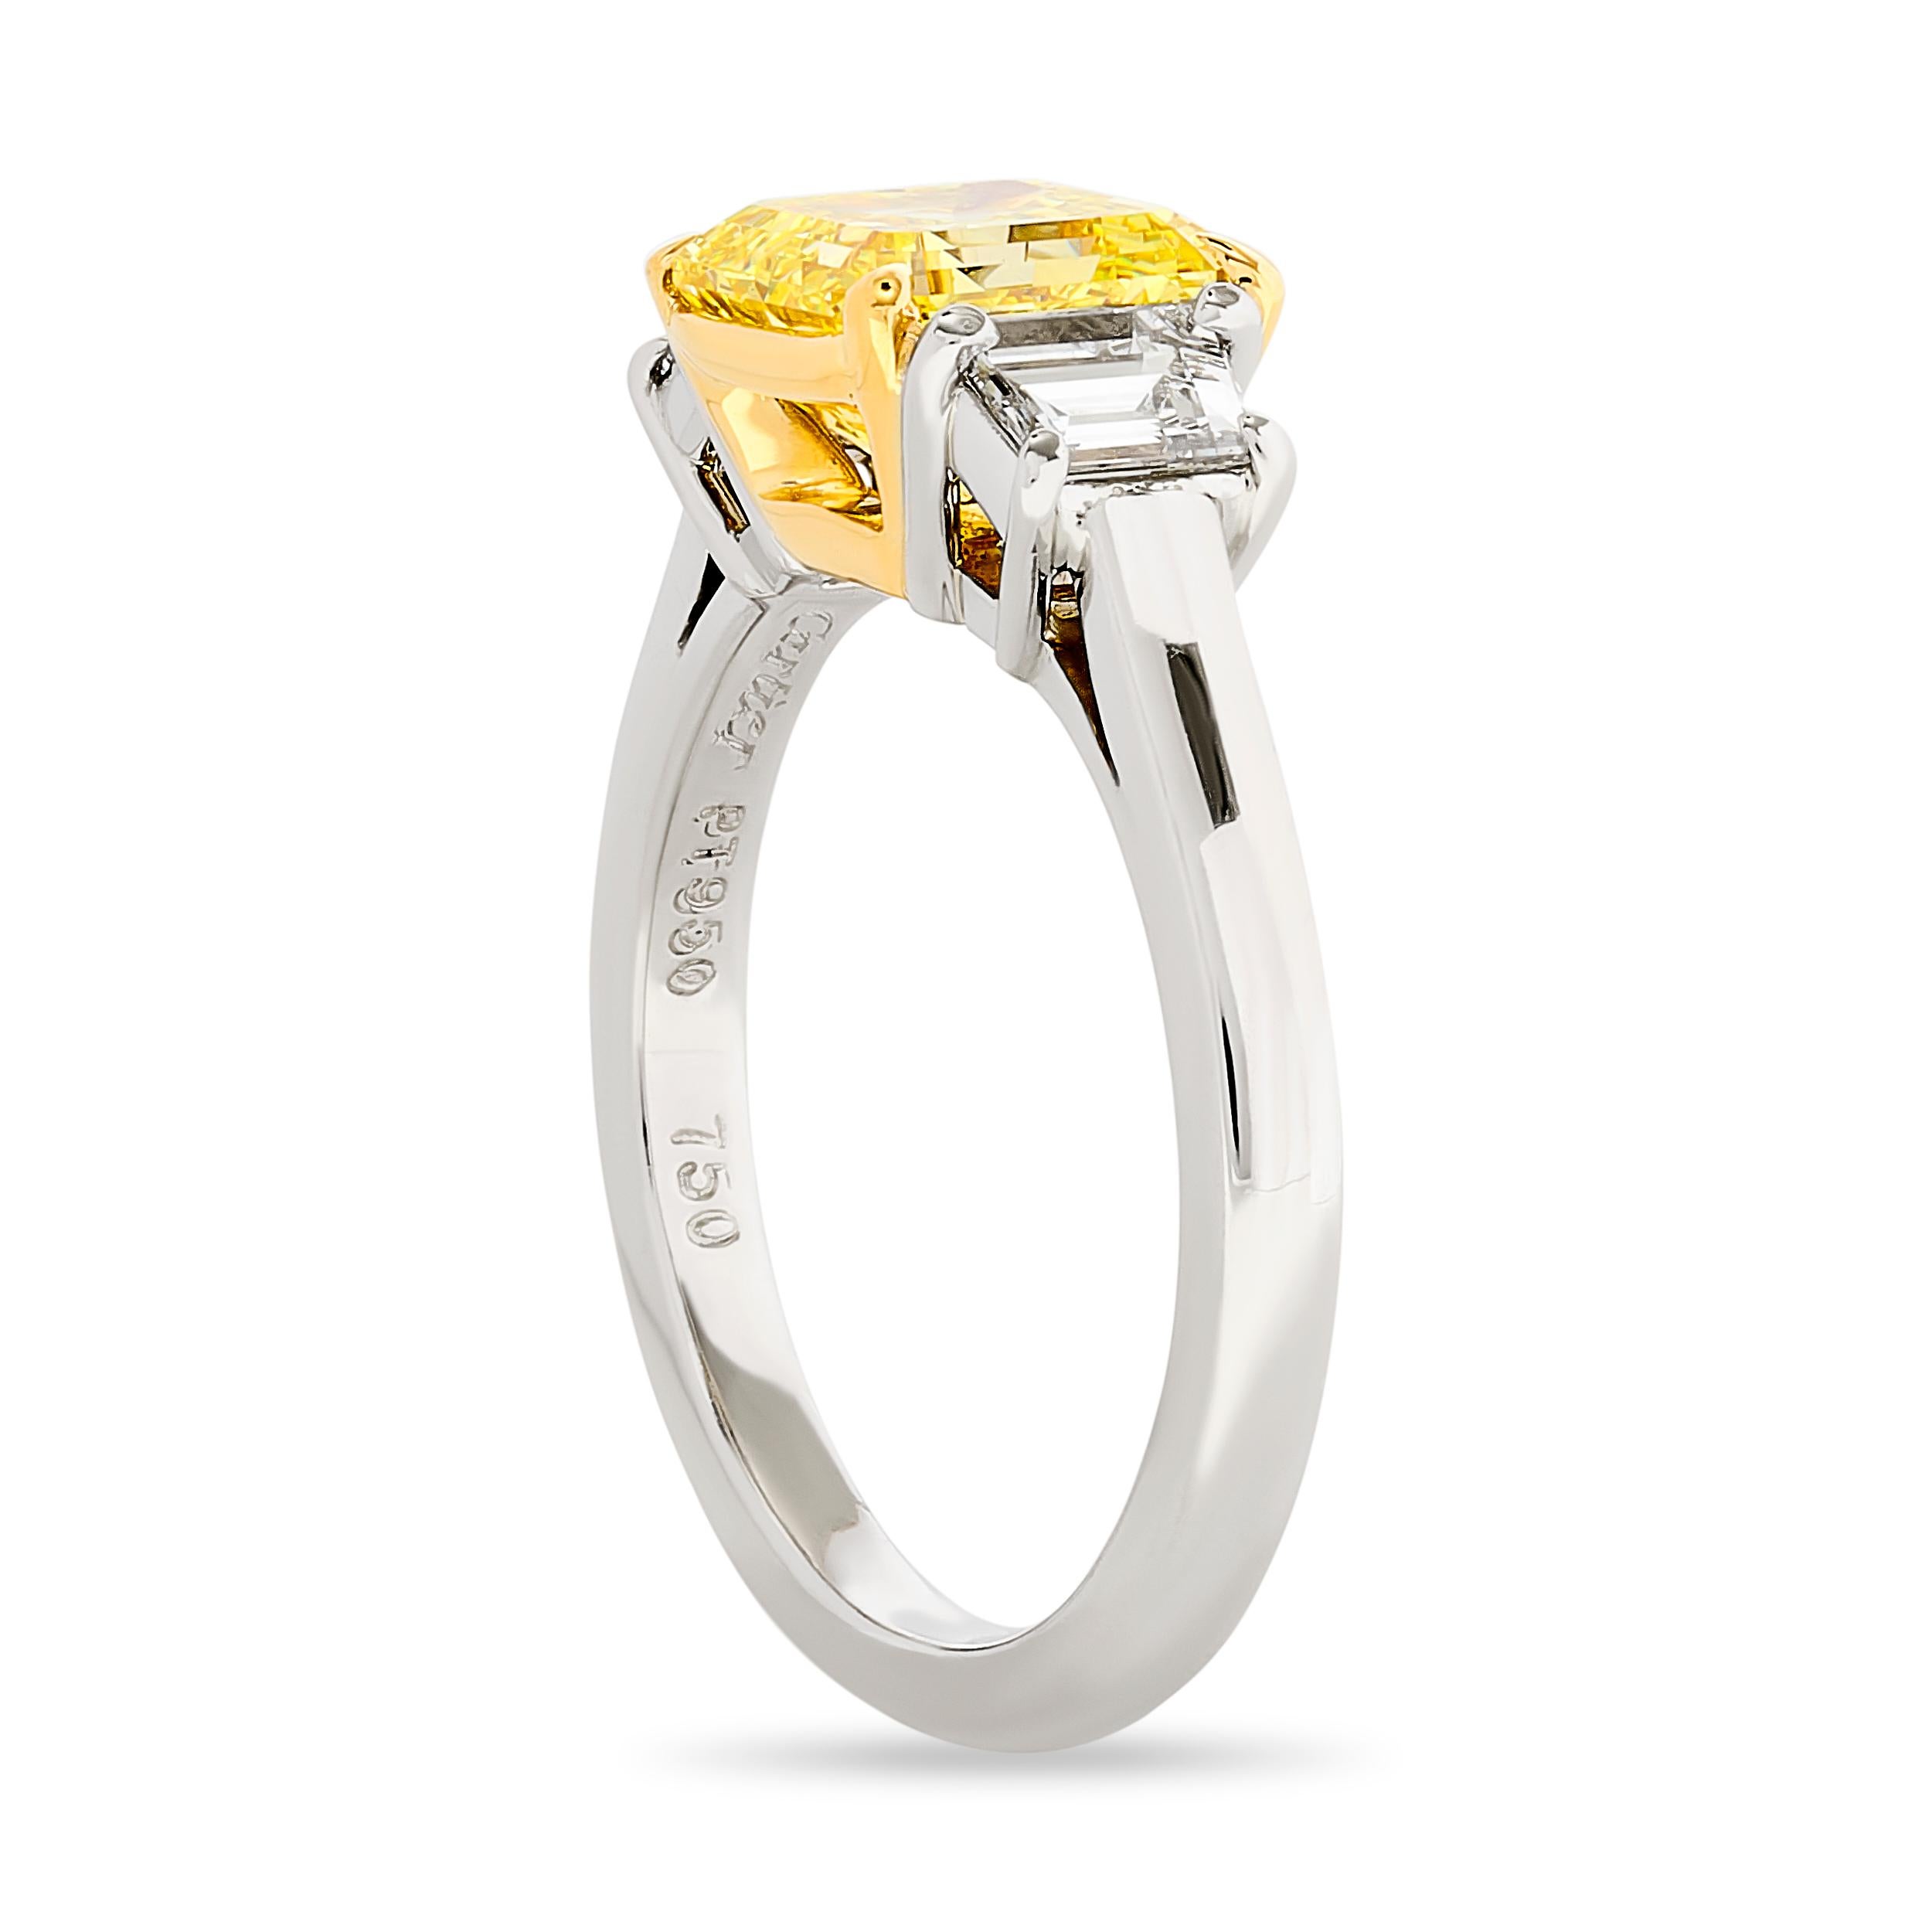 Éclat d'or : Embrassez l'éclat de cette bague à trois pierres de Cartier, dont le cœur est constitué d'un diamant émeraude carré de couleur Fancy Intense Yellow.

Réalisée en platine et en or jaune 18 carats, cette bague a.. :
1 émeraude carrée